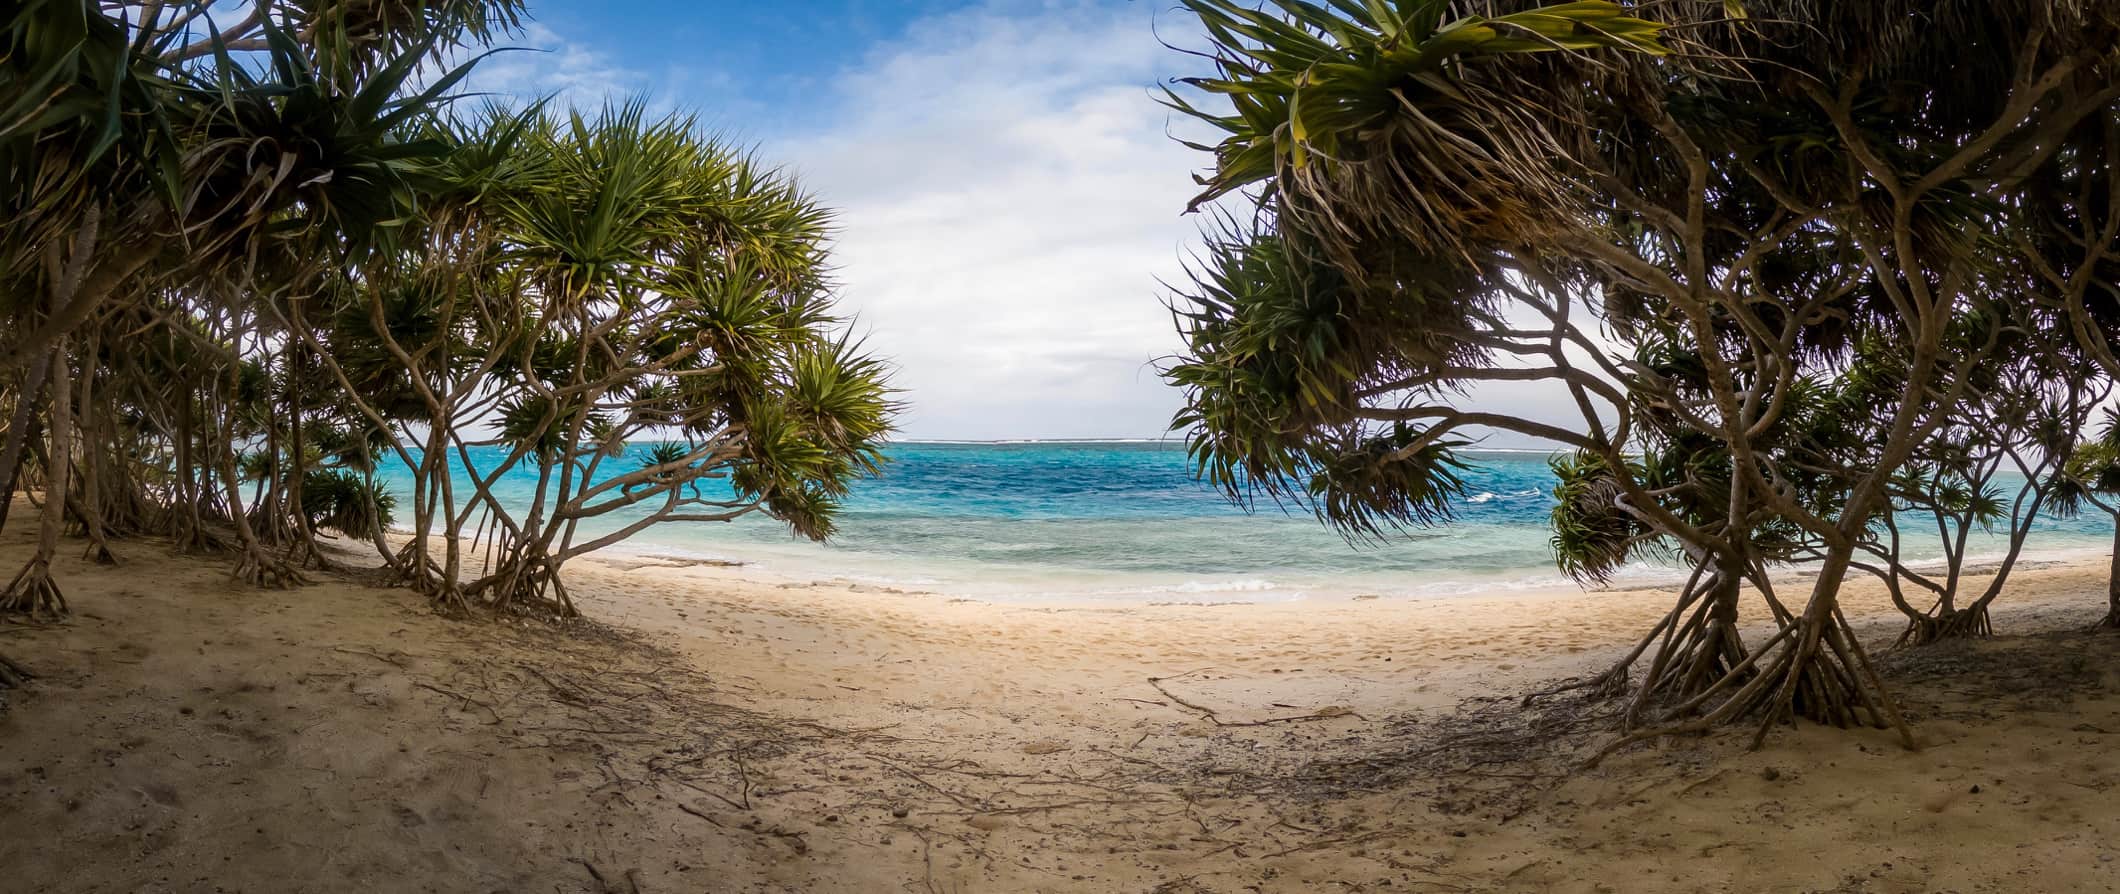 Praia de areia branca em Vanuatu com águas cristalinas e plantas tropicais emoldurando a vista